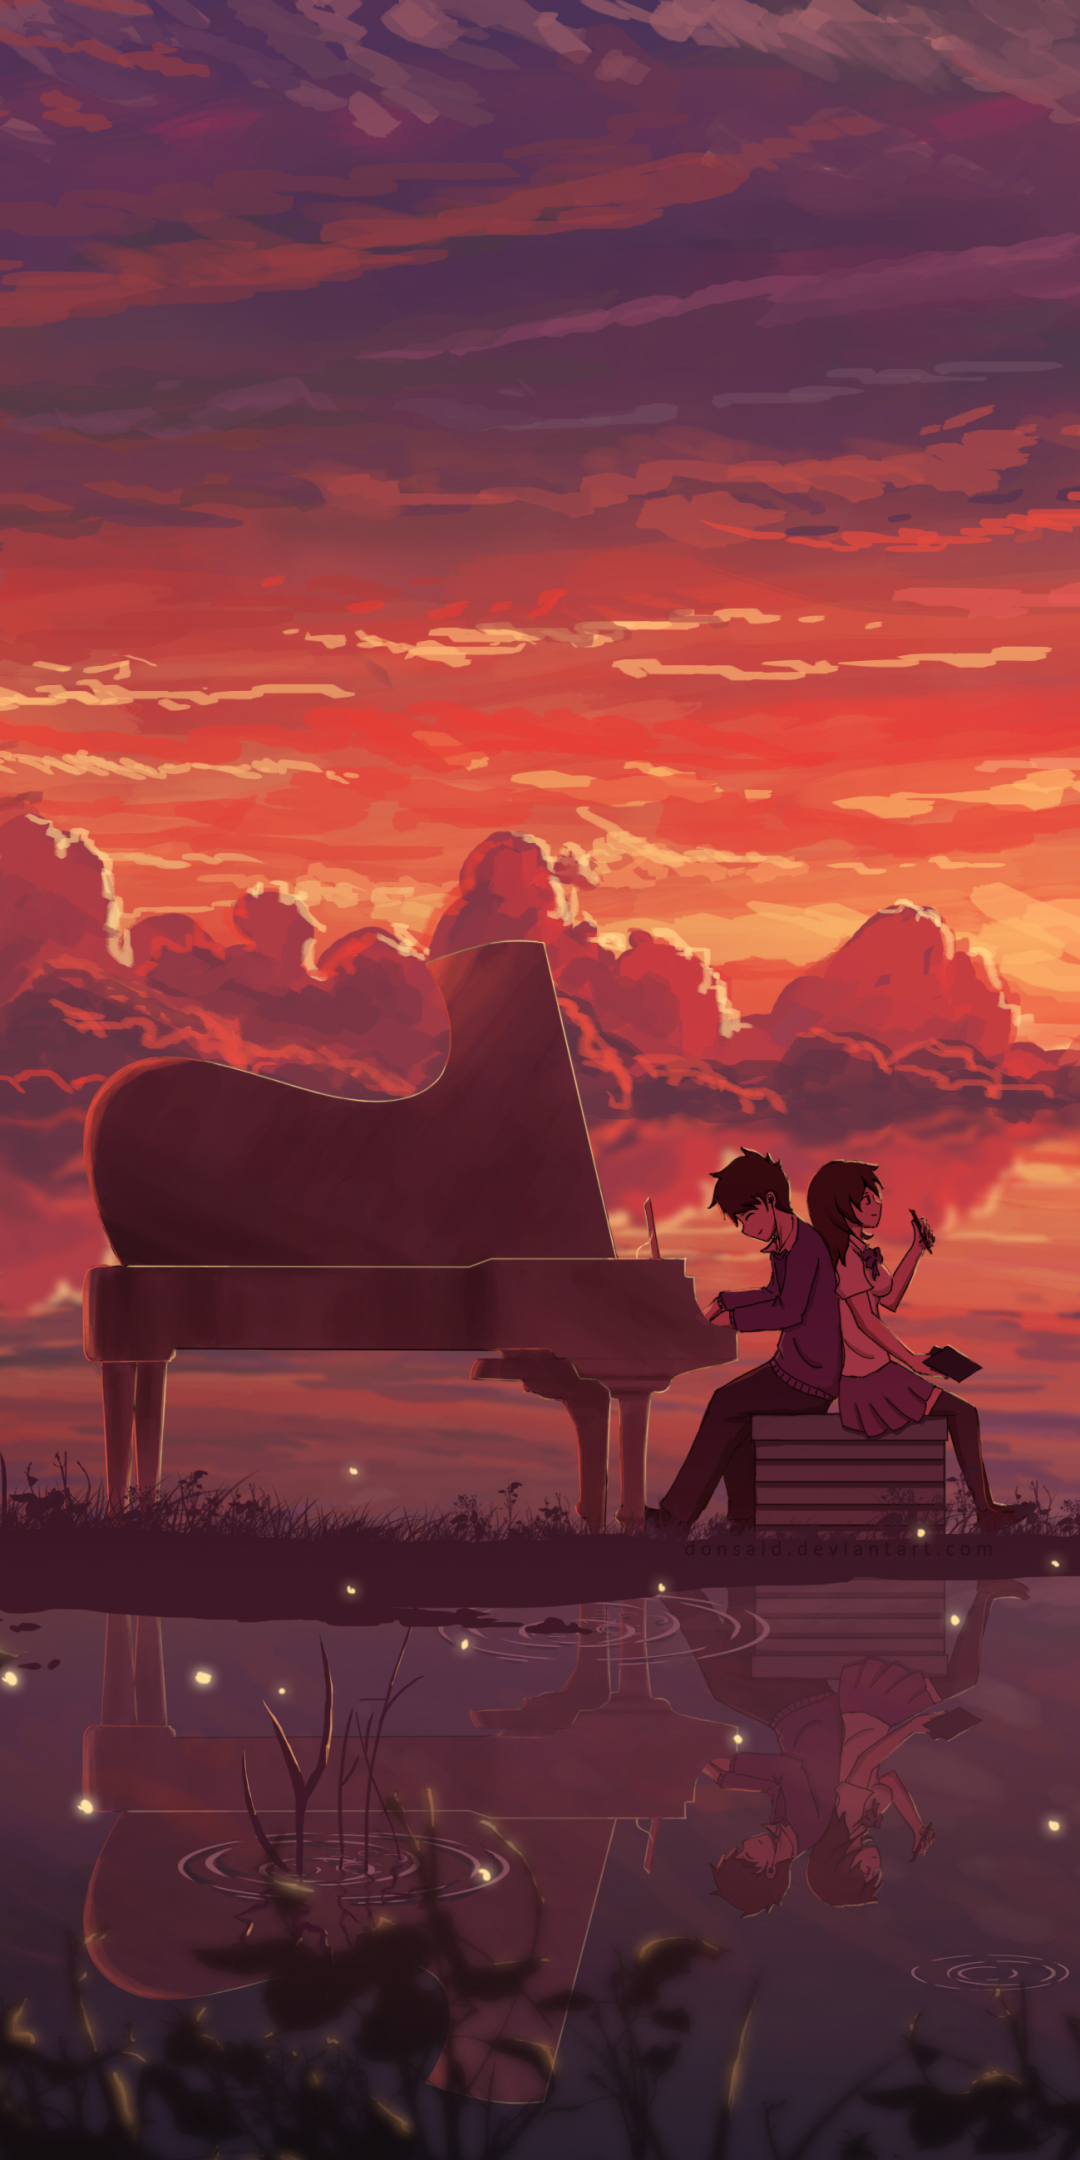 Pianist | Phim hoạt hình hay, Anime, Hình ảnh